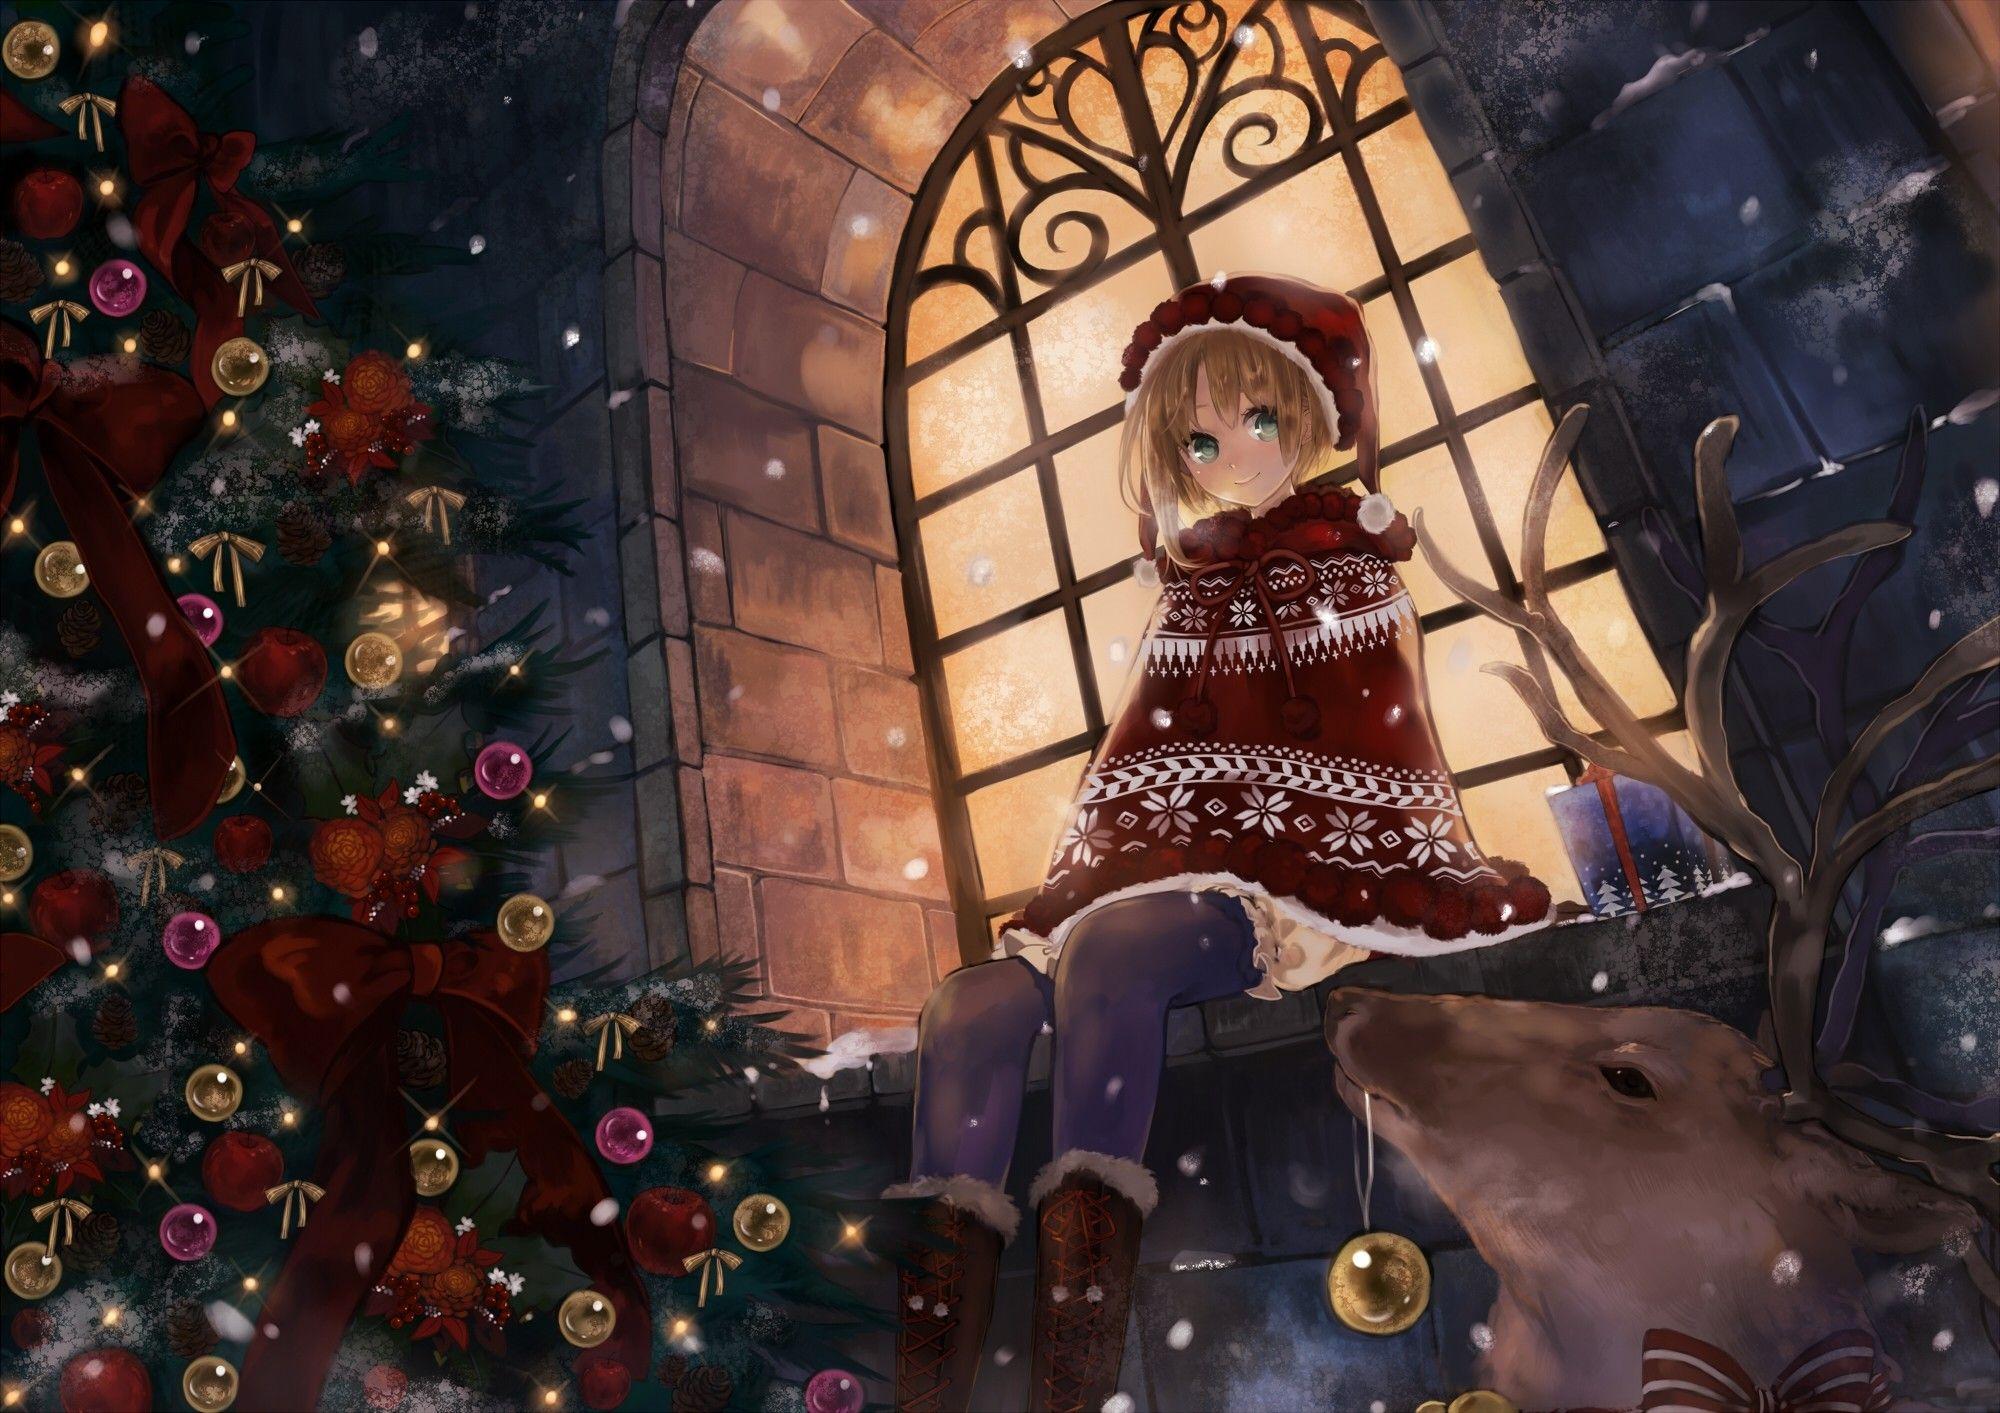 Giao thoa giữa vẻ đẹp và tuyệt vời của Giáng Sinh với anime là điều tuyệt vời nhất. Top hình ảnh đẹp giáng sinh anime sẽ giúp bạn cảm nhận tất cả niềm vui và sự ấm áp trong mùa lễ hội this. Hãy thưởng thức hình ảnh đầy sắc màu này để tìm hiểu thêm về giáng sinh và anime.